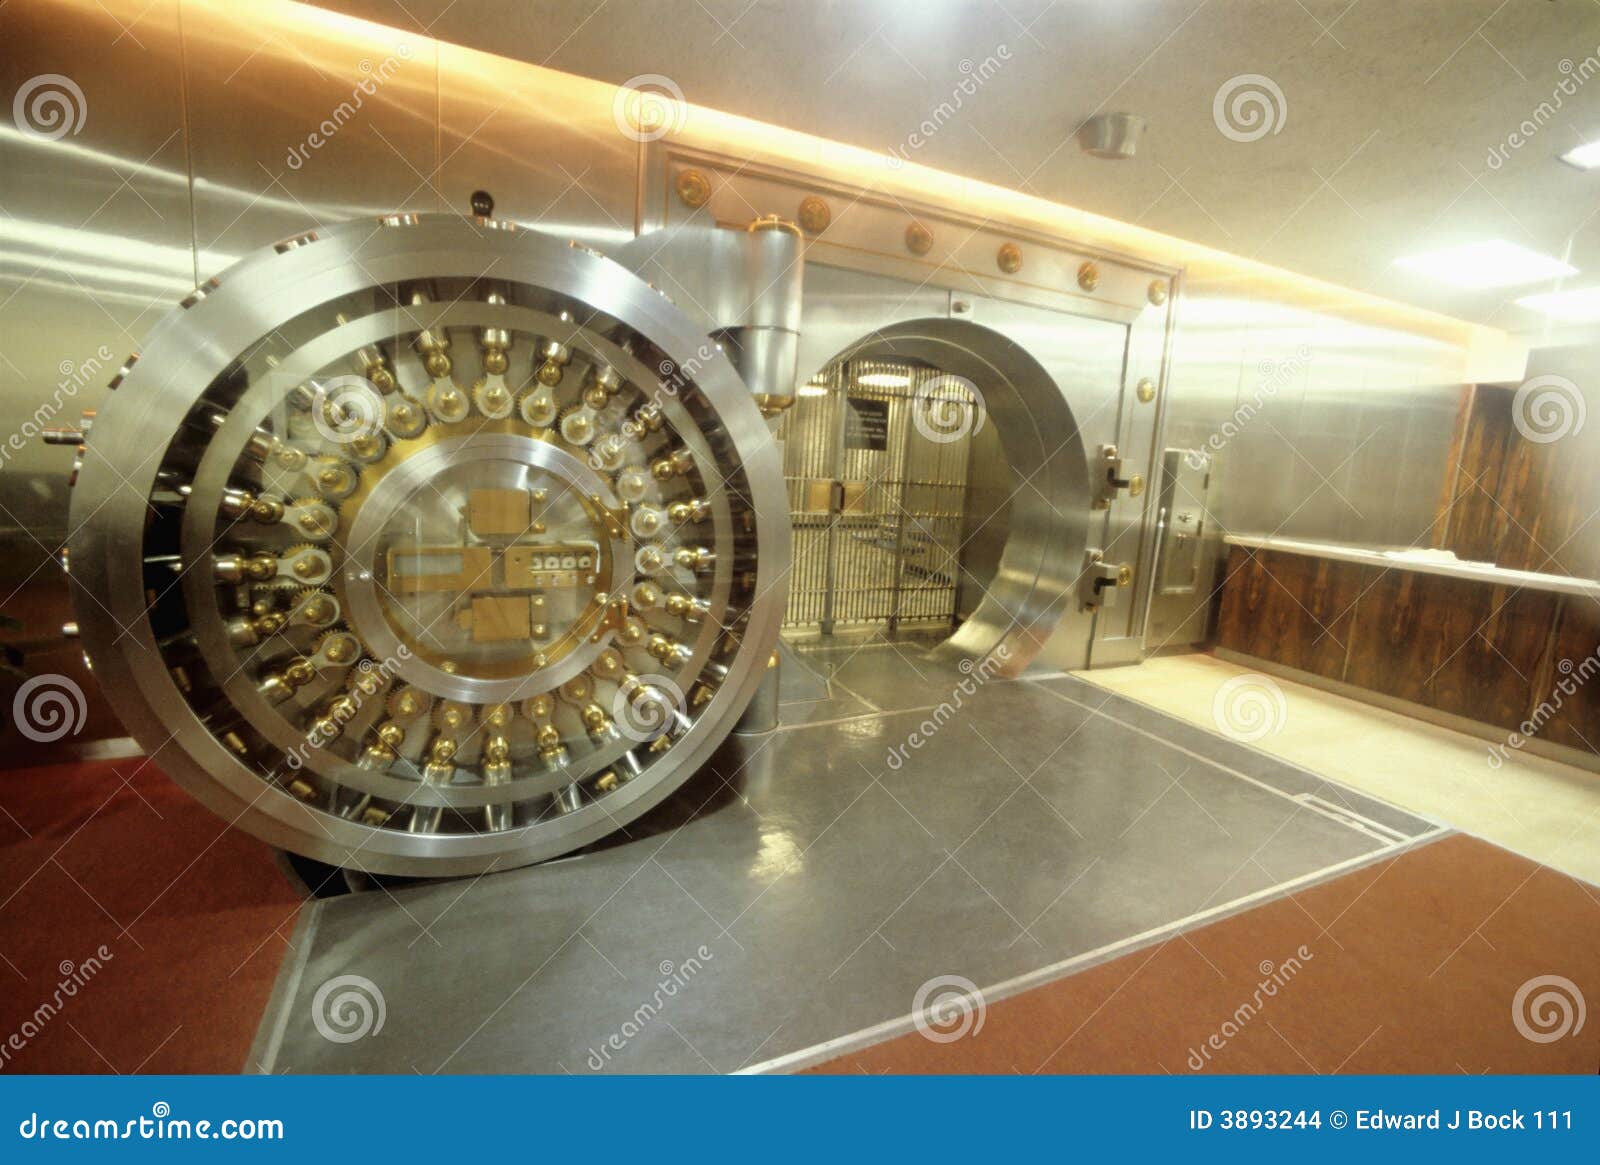 open bank vault